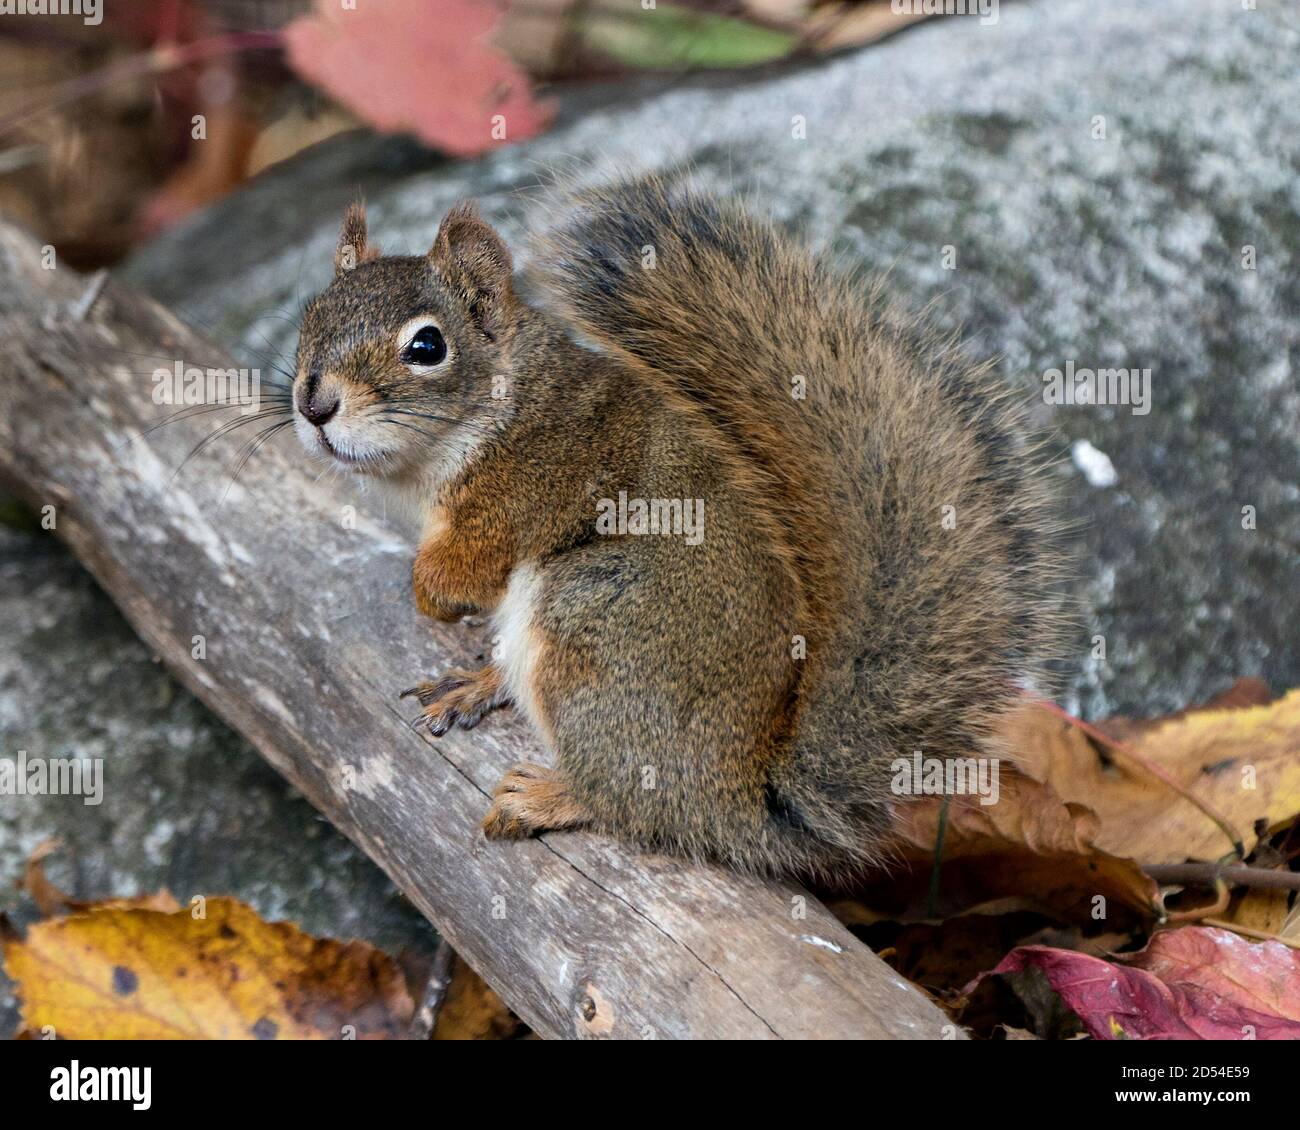 Eichhörnchen Nahaufnahme Profilansicht auf einem Baumstamm im Wald sitzend mit buschigen Schwanz, braunem Fell, Nase, Augen, Pfoten mit einem unscharfen Felsenhintergrund. Stockfoto